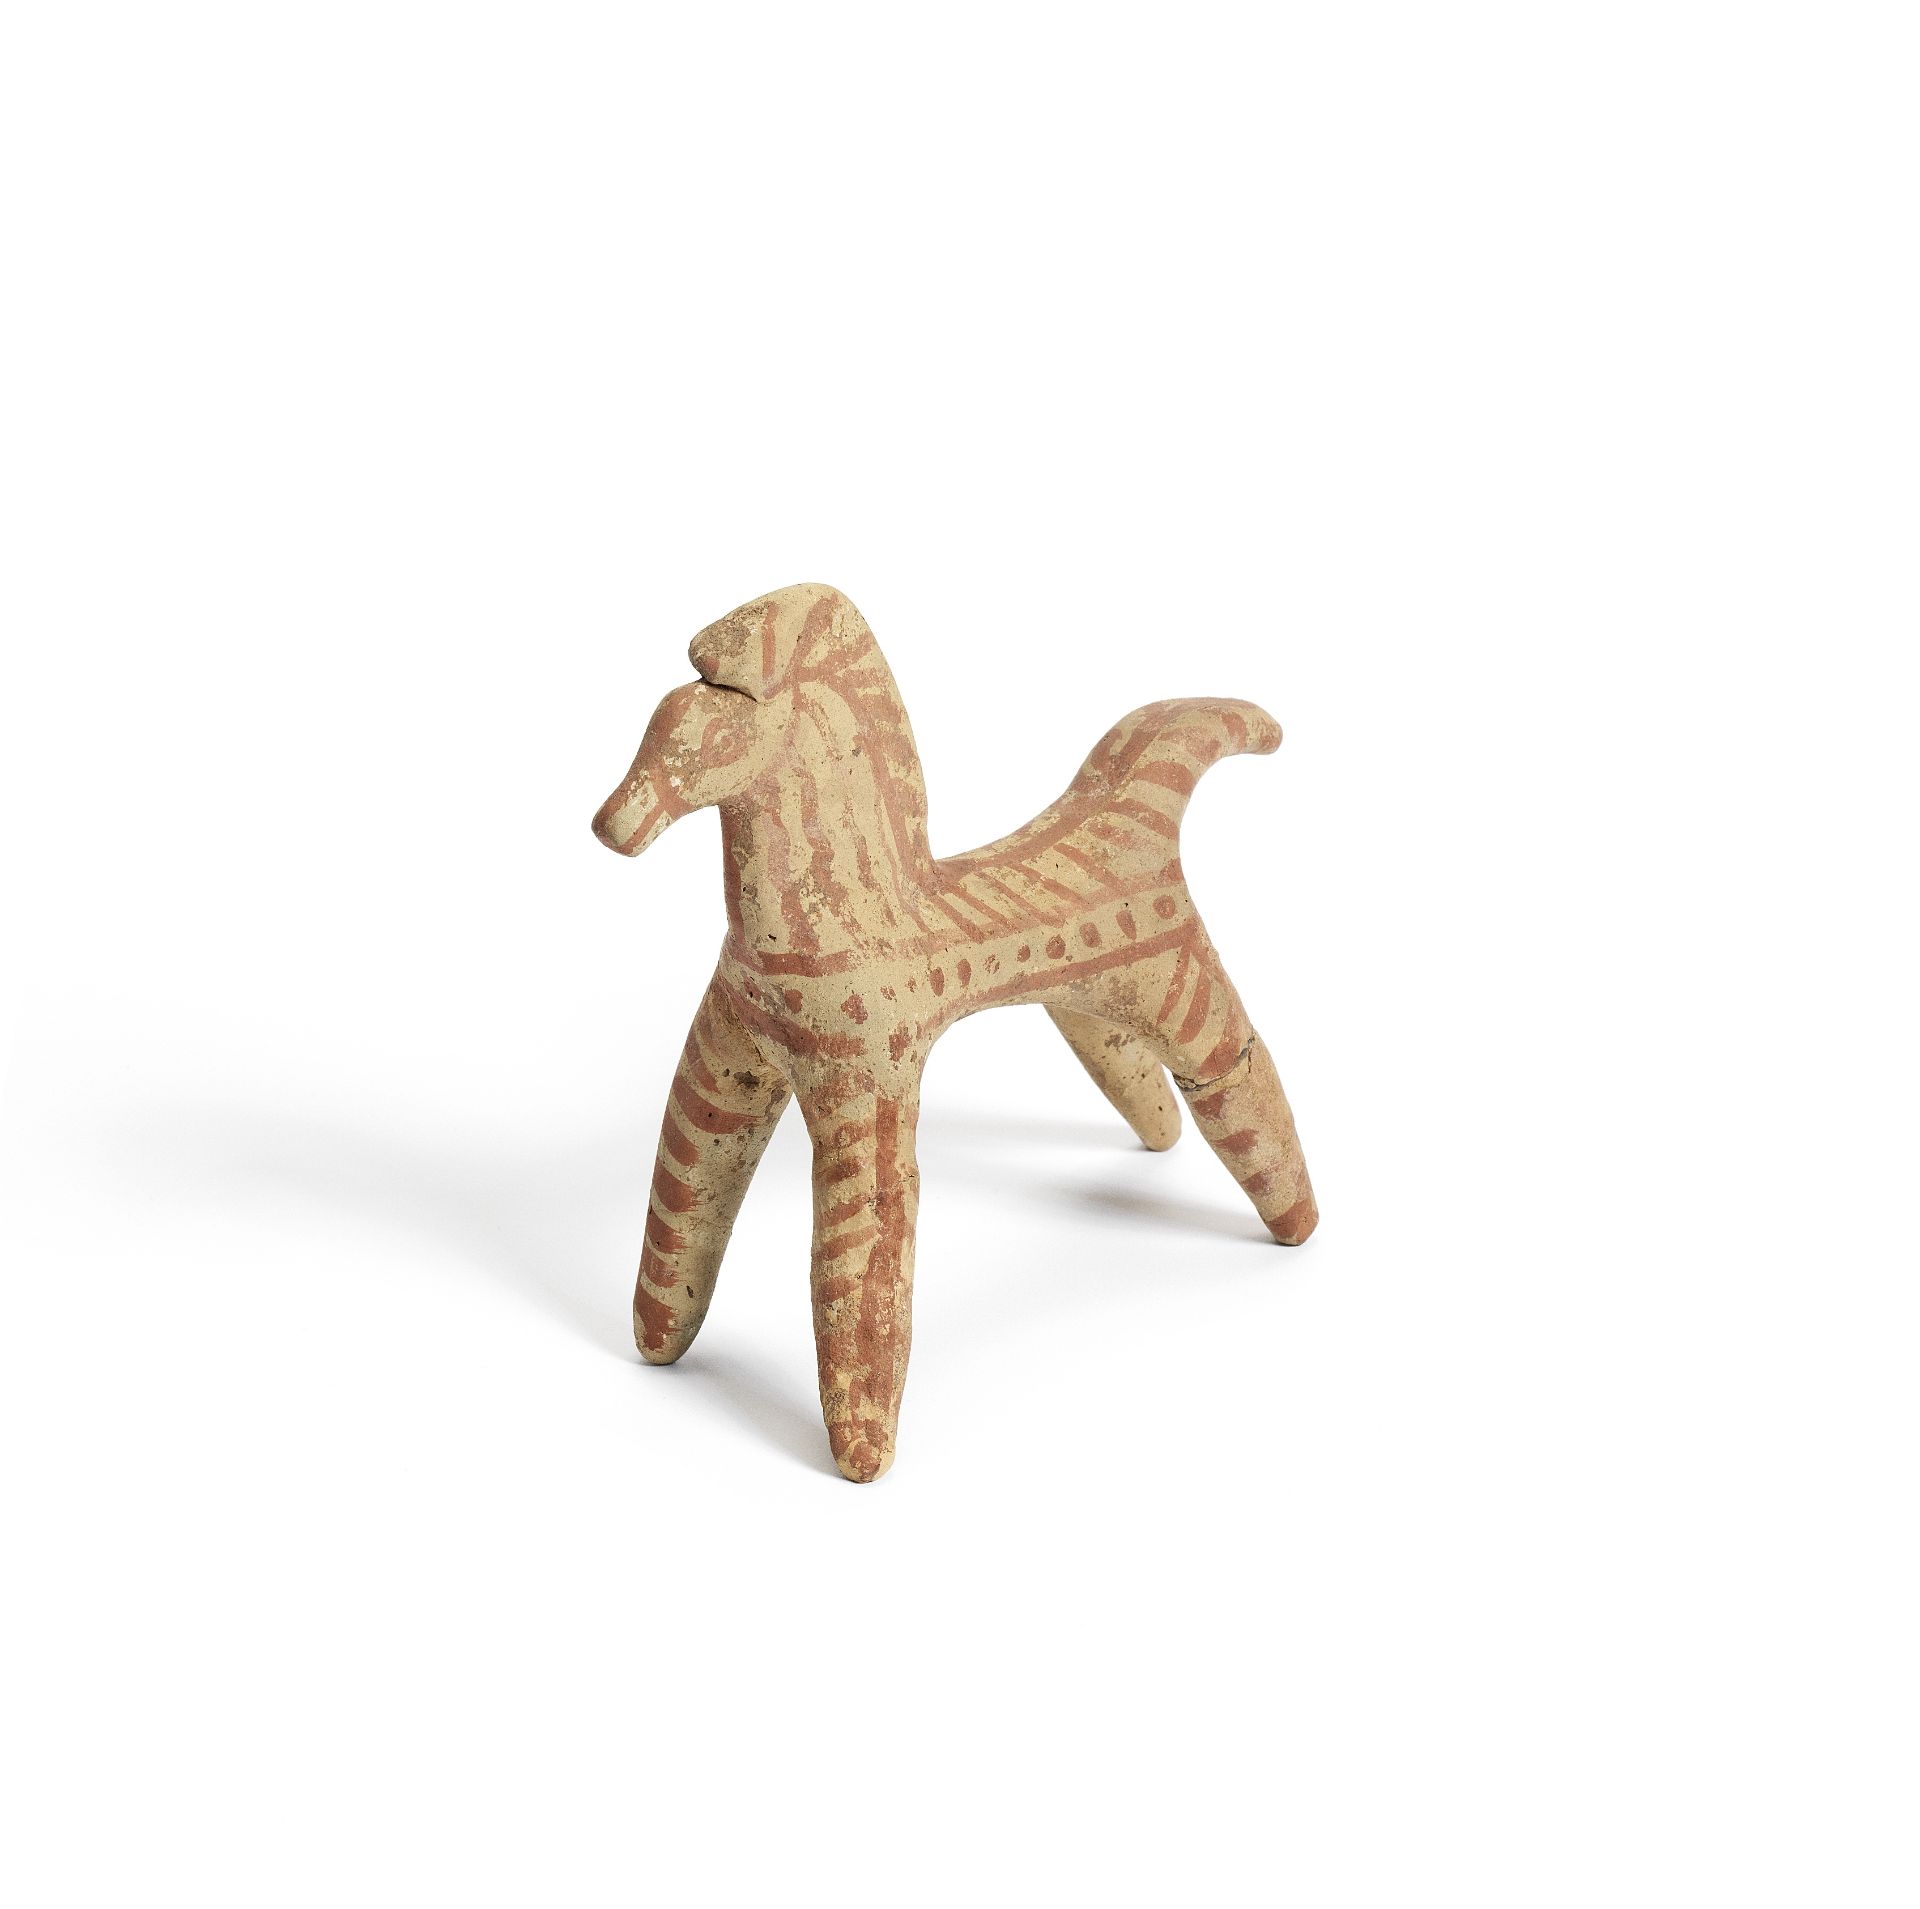 A Boeotian terracotta horse